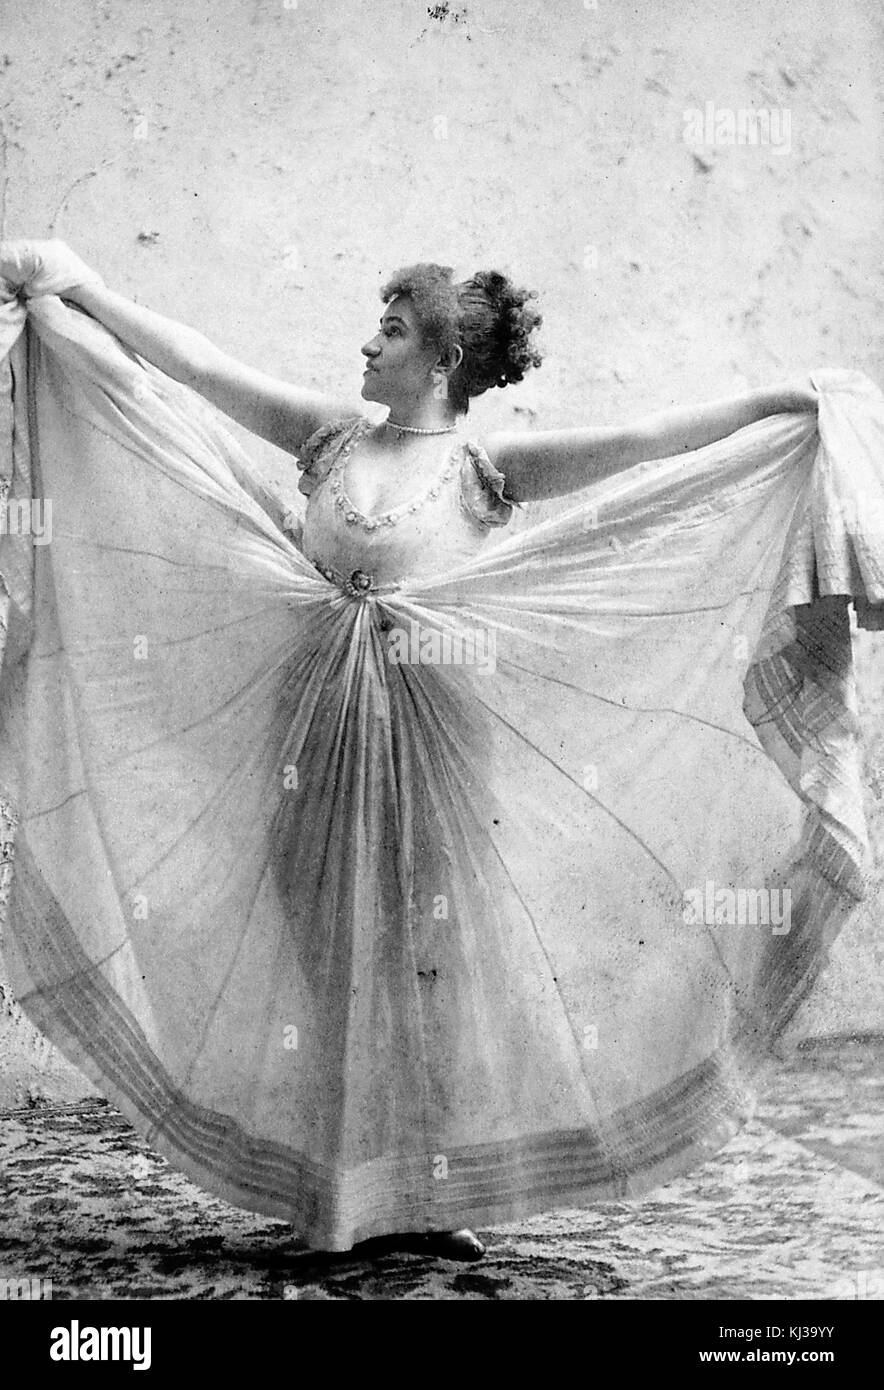 Portrait photographique de Minnie Renwood, elle tient les côtés de sa robe volumineuse à hauteur des épaules tandis que l'avant est encore suspendu au sol, elle était une danseuse populaire à New York dans les années 1890, elle a fait l'objet d'une affaire juridique importante qui a déterminé que les mouvements d'une danse ne pouvaient pas être protégés par des droits d'auteur, 1900. De la bibliothèque publique de New York. Banque D'Images